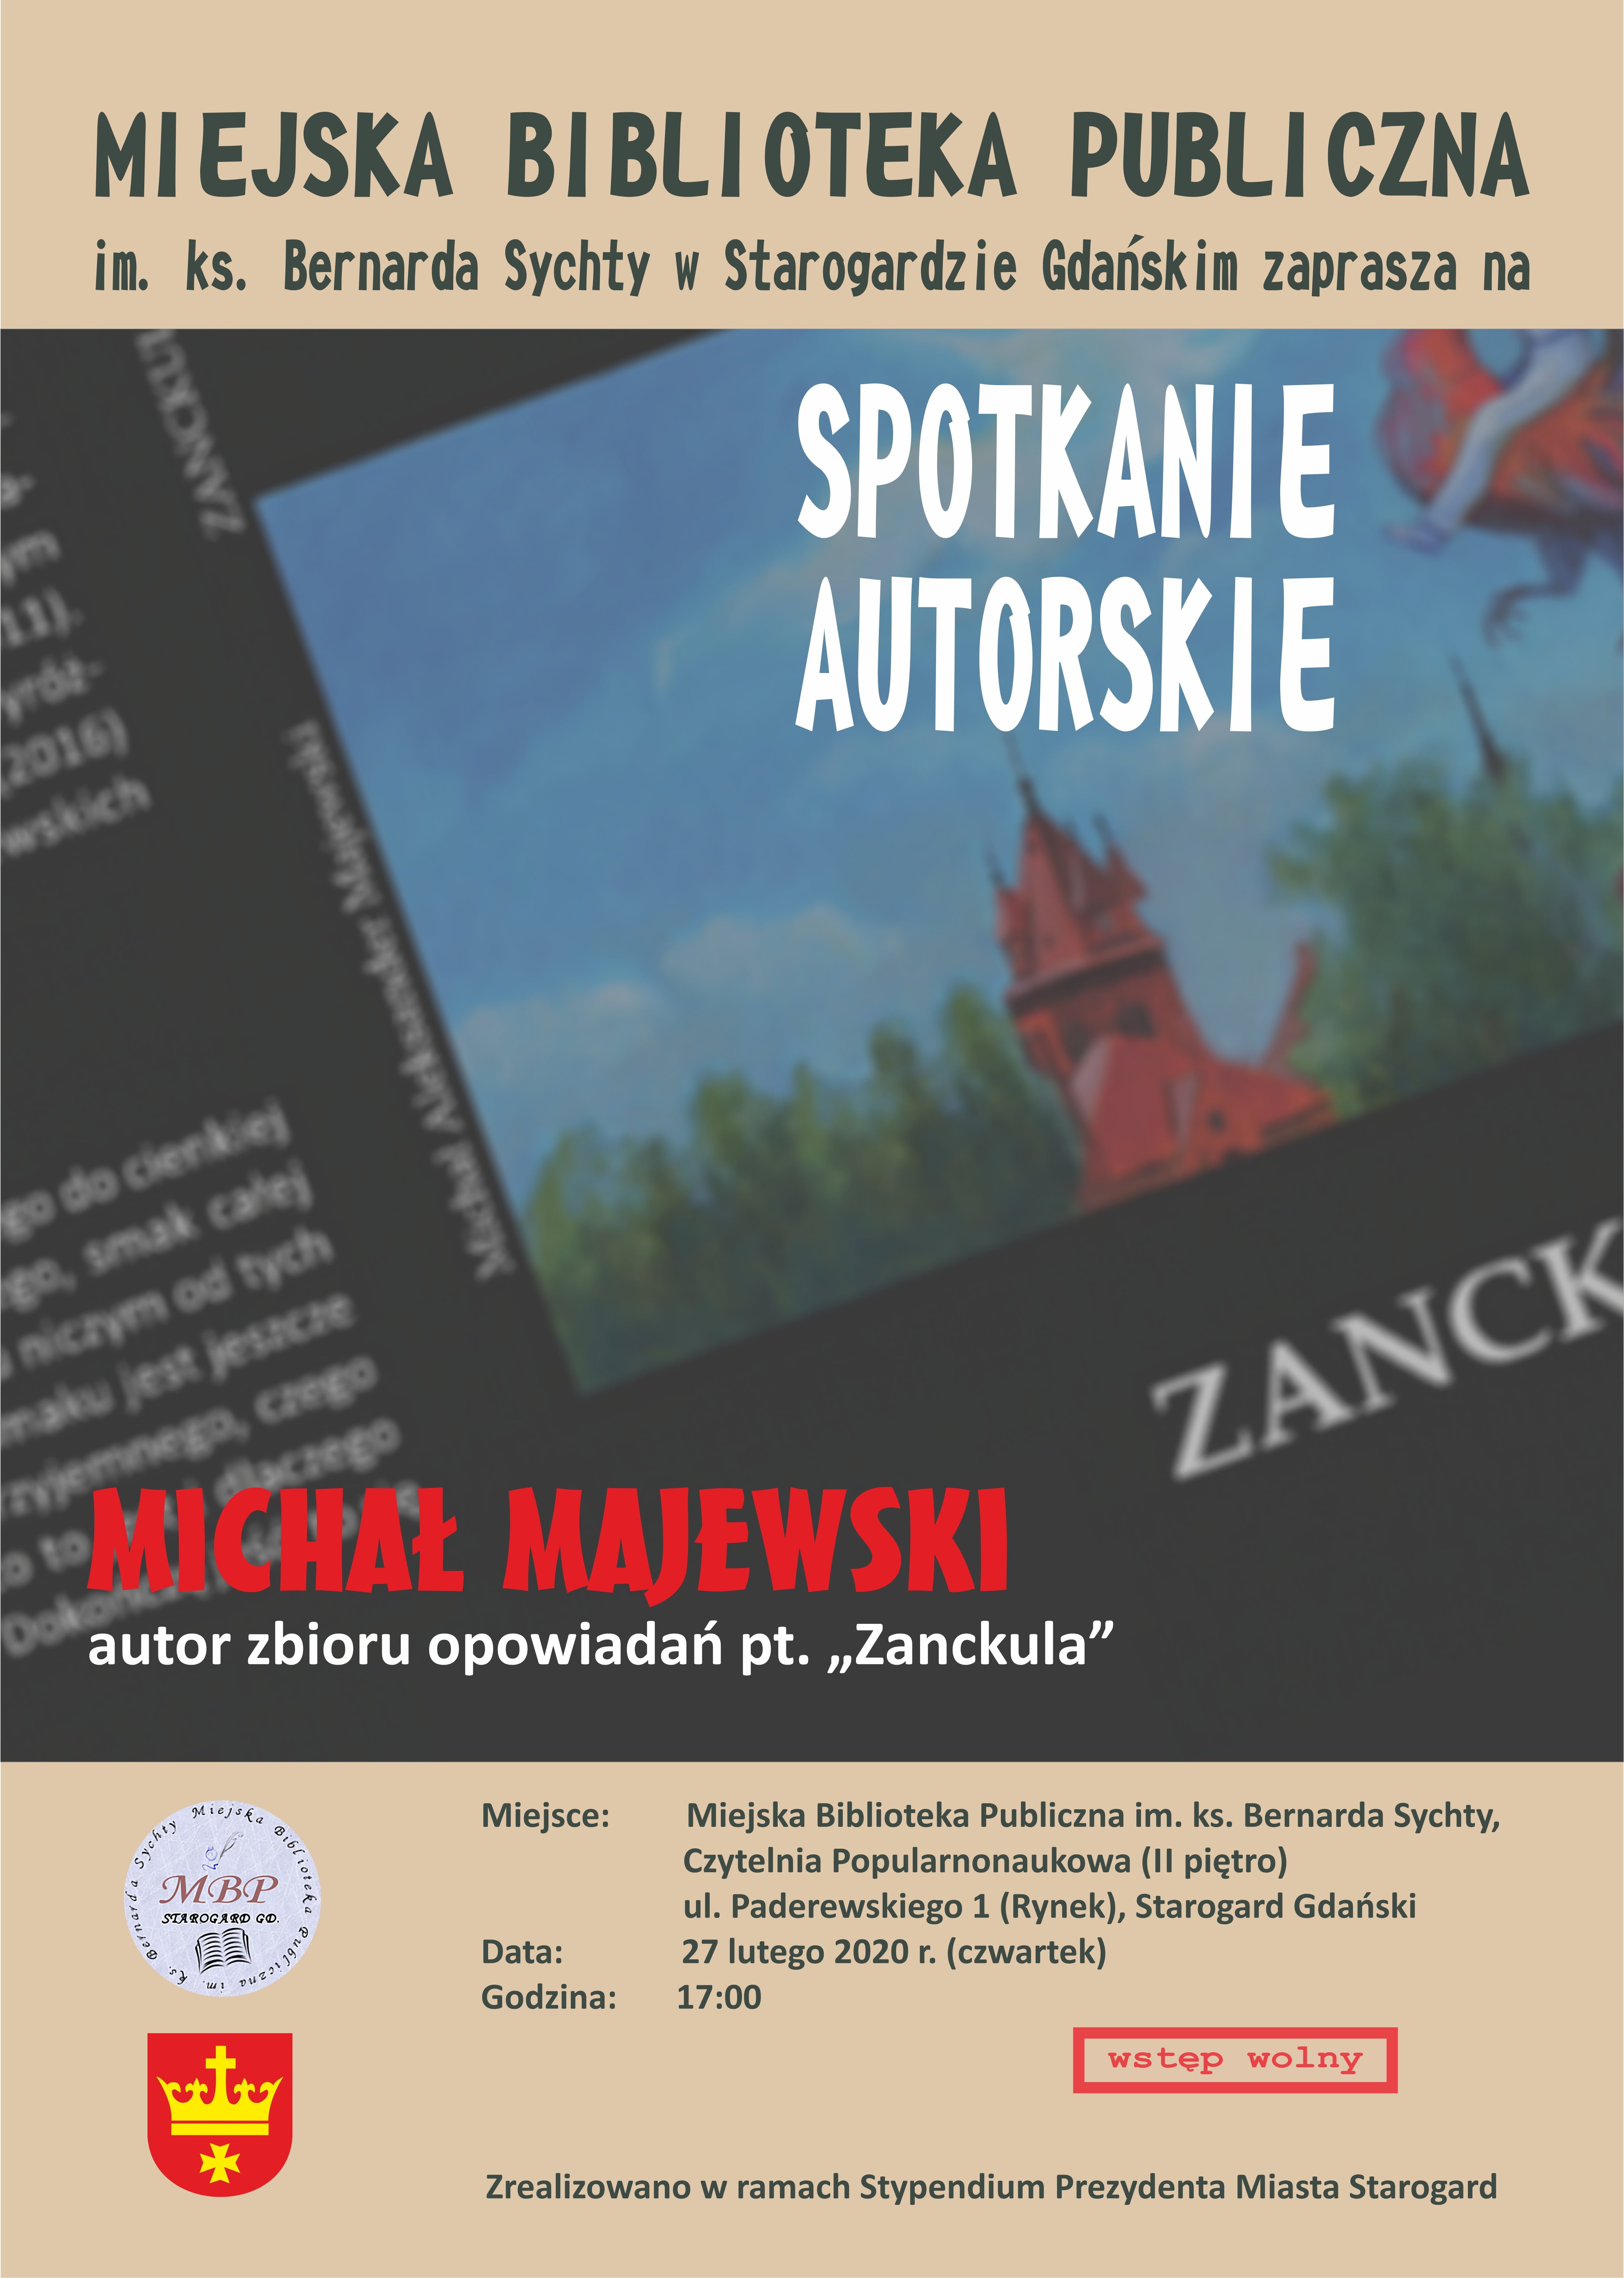 Spotkanie z pisarzem Michałem Majewskim, autorem zbioru opowiadań "Zanckula"